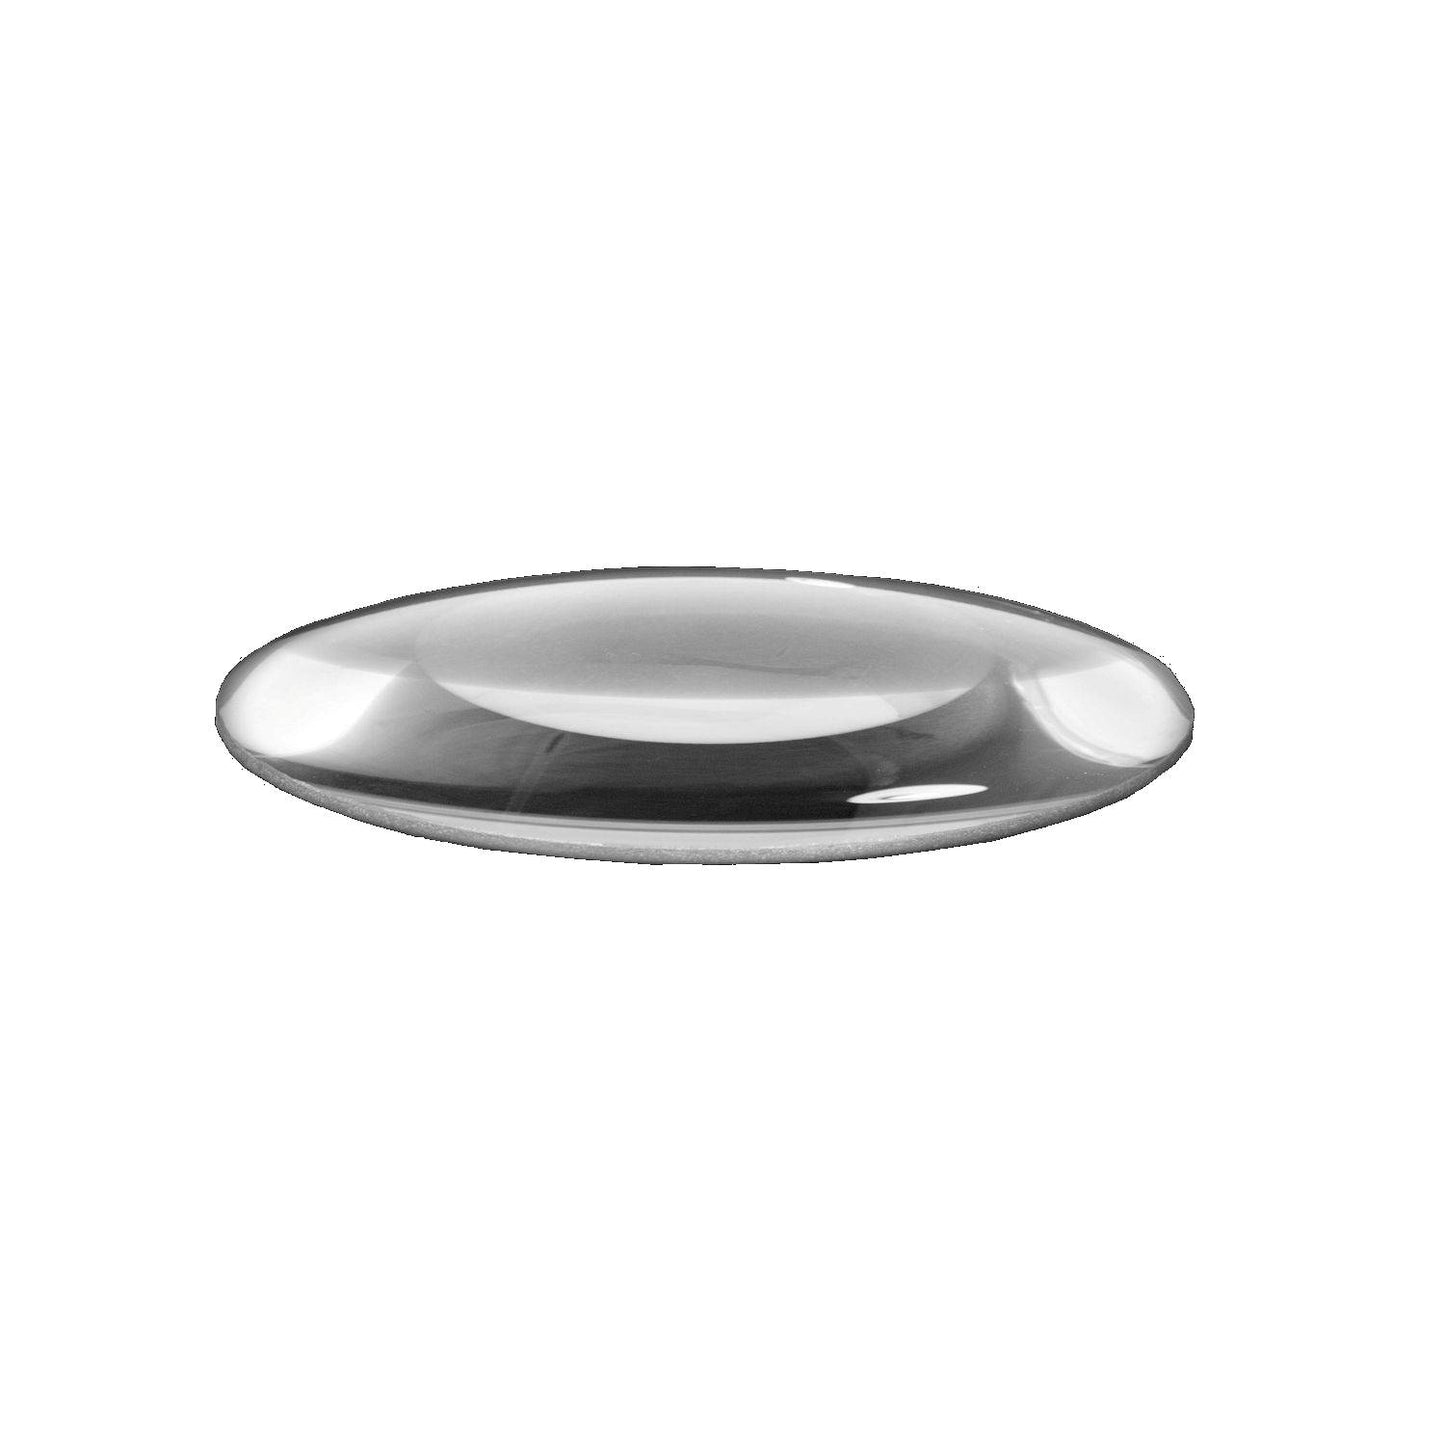 Lentille en verre clair ou standard Lumeno en 3, 5 ou 8 dioptries avec 125 mm